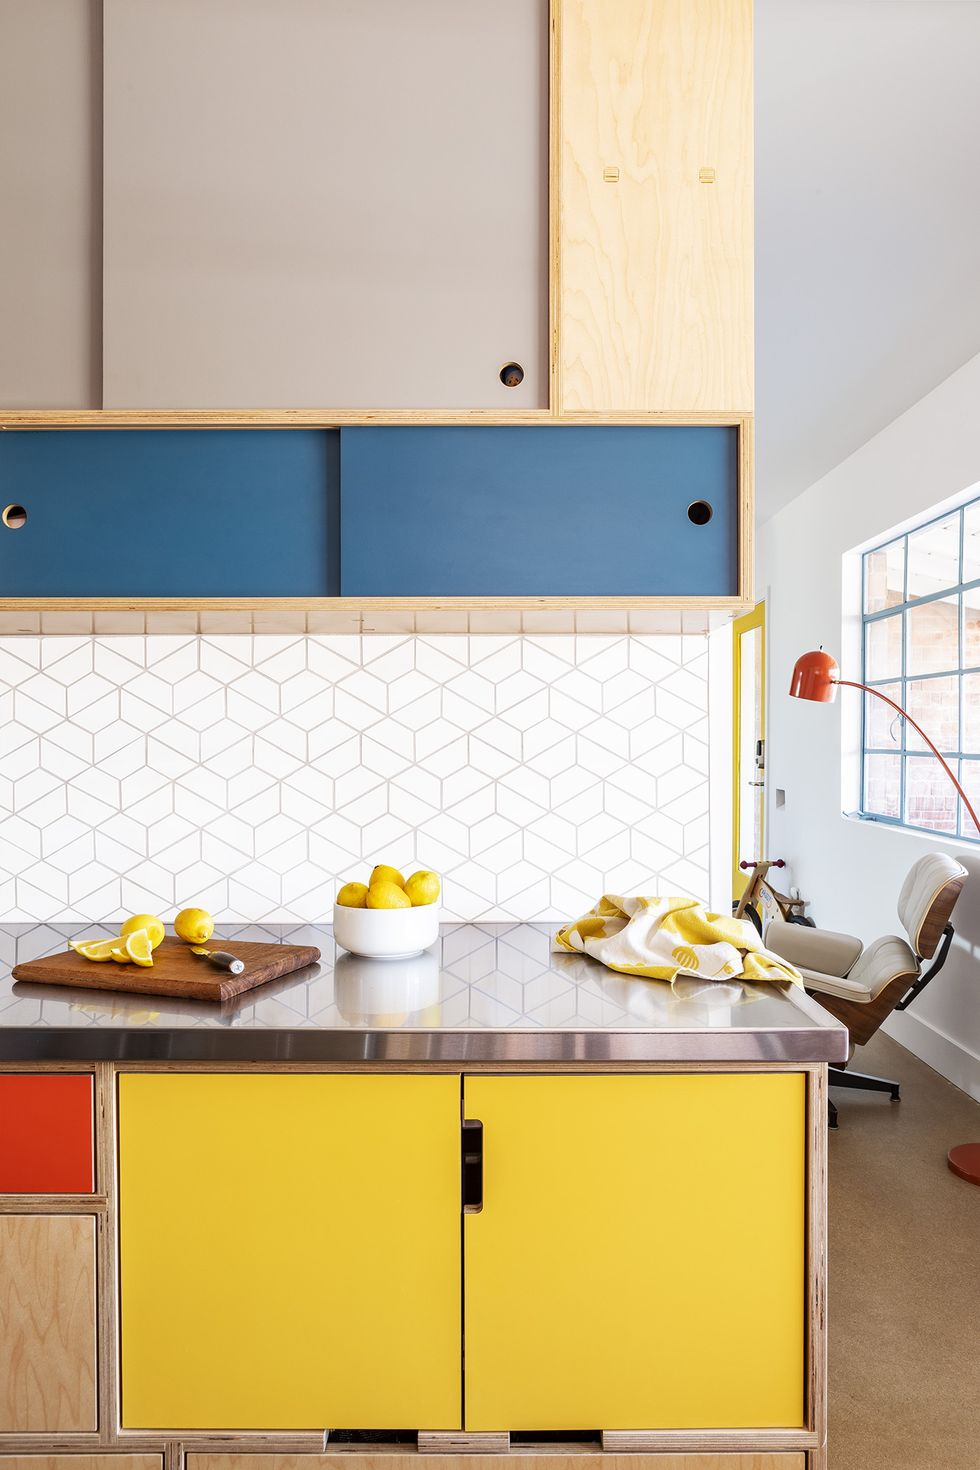 63 Kitchen Cabinet Ideas For a Stunning Kitchen